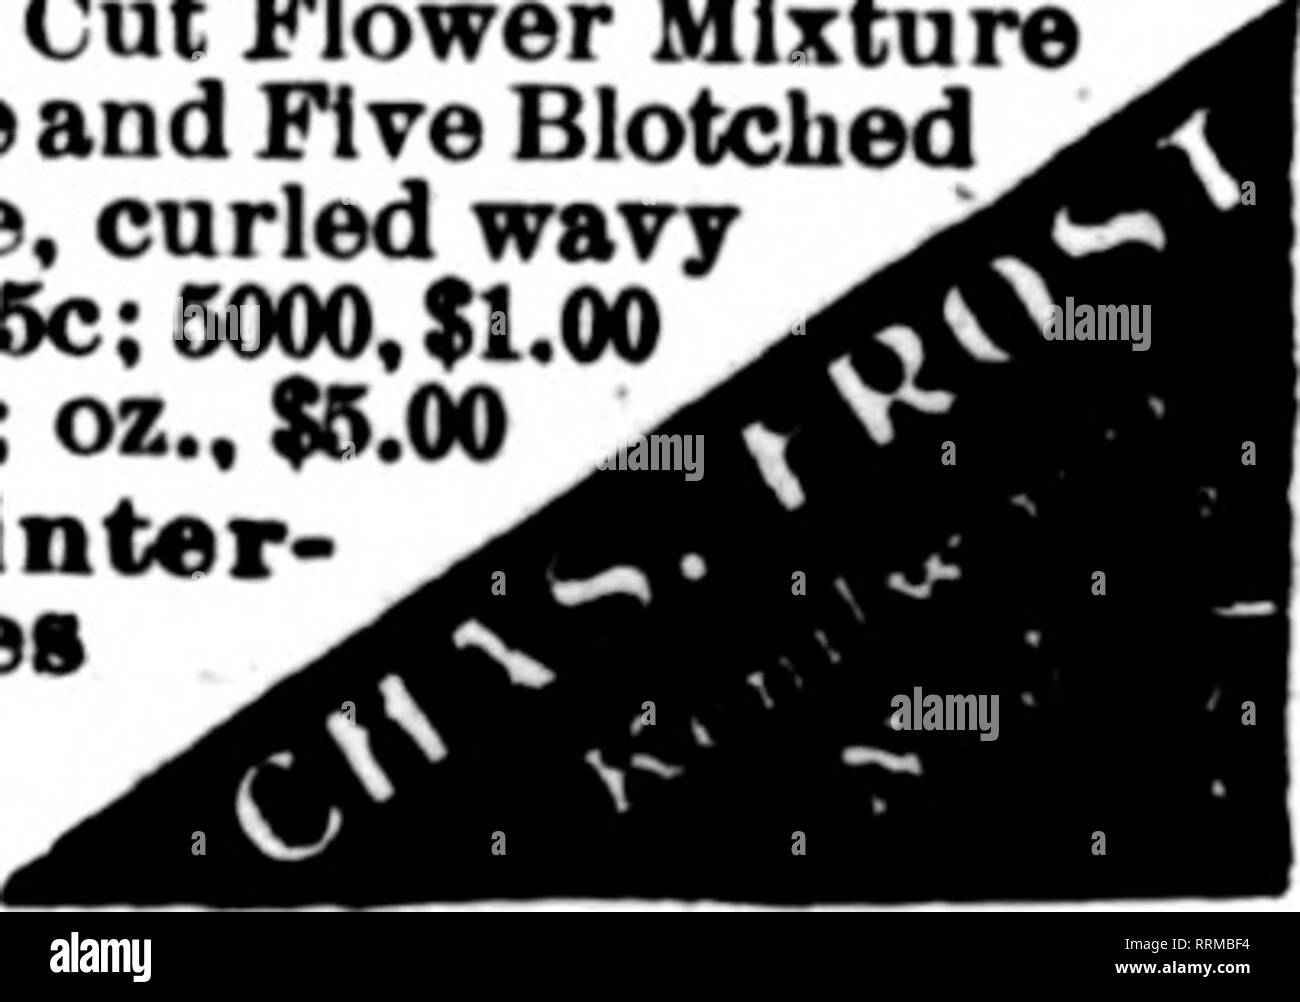 . Fioristi' review [microformati]. Floricoltura. Qli Kenllworth Kenllworth miscela di fiori da taglio miscela GlantThreeand cinque Spotted capolavoro, arricciata ondulata semi 1000, 26c; 6000, $1.00 mi4-oz.,$1.25; oz.,$6.00 Inizio Flowerlnc o inverno- bloomiiiK Pansies gigante £00 semi, 2Sc: 1000, 40c: &gt;"-oz.. $1.10: I4-oz.,$2.00. penetrazione di acido. Ma in questo appar- ingresso processo innaturale, l uomo è veramente cooperante con la natura, come egli deve sempre fare. Qualsiasi metodo di trattamento che de- stroys o rompe il seme-coat distrugge anche la resistenza alla germinazione, e sodo semi sottoposti a tale trattamento germina Foto Stock